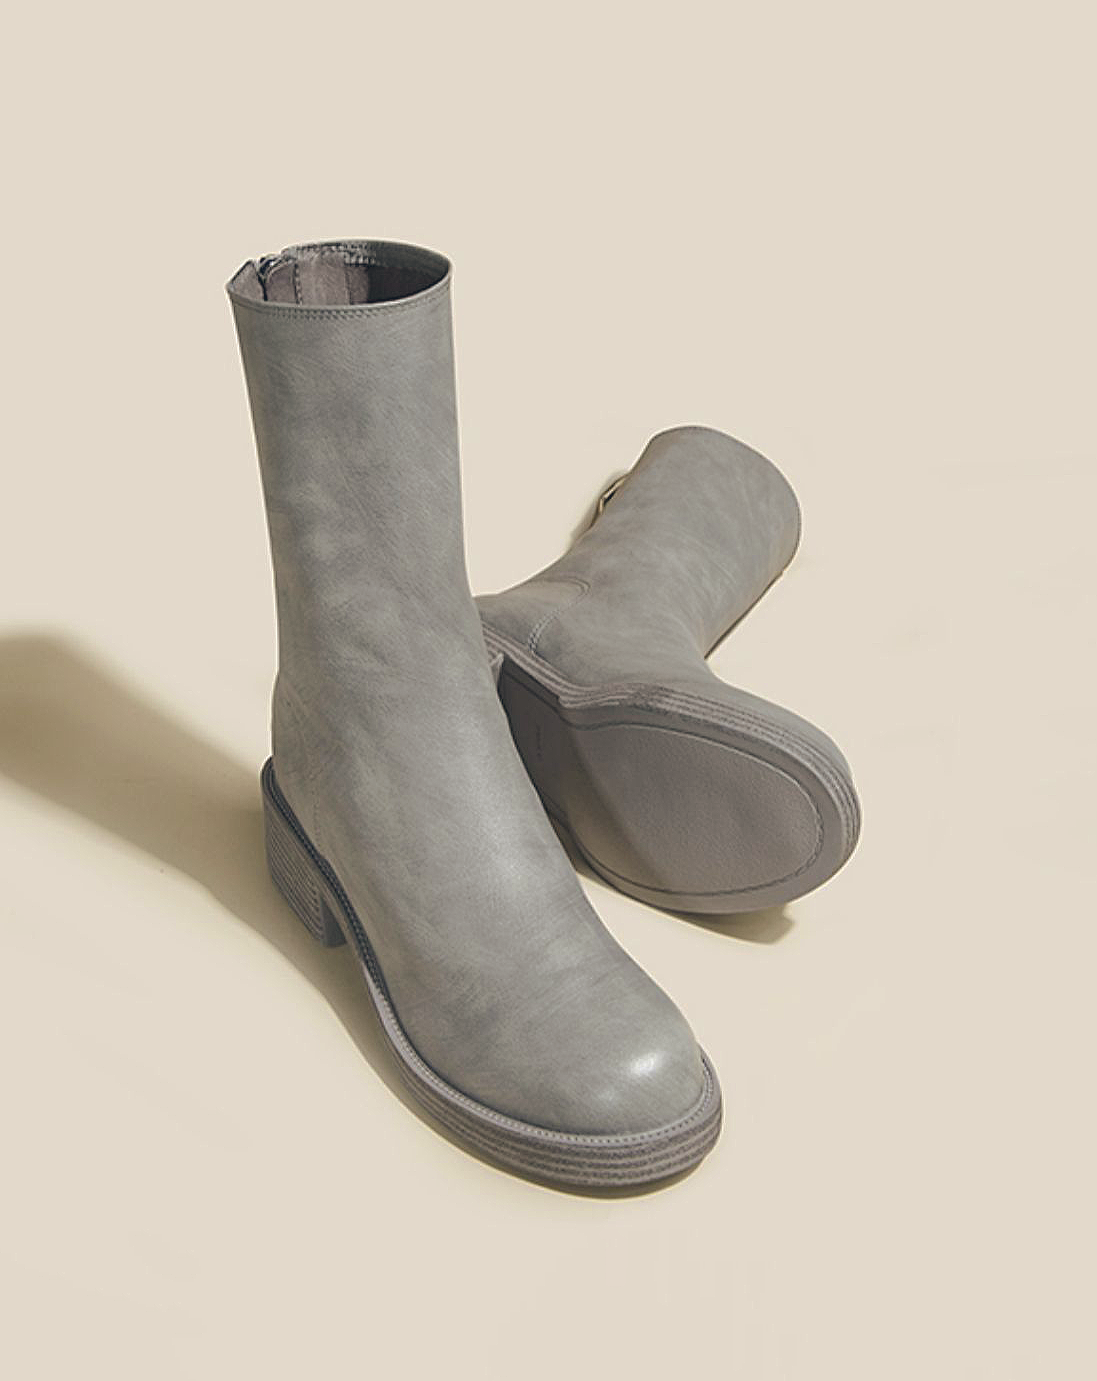 ♀Plain Toe Leather Boots